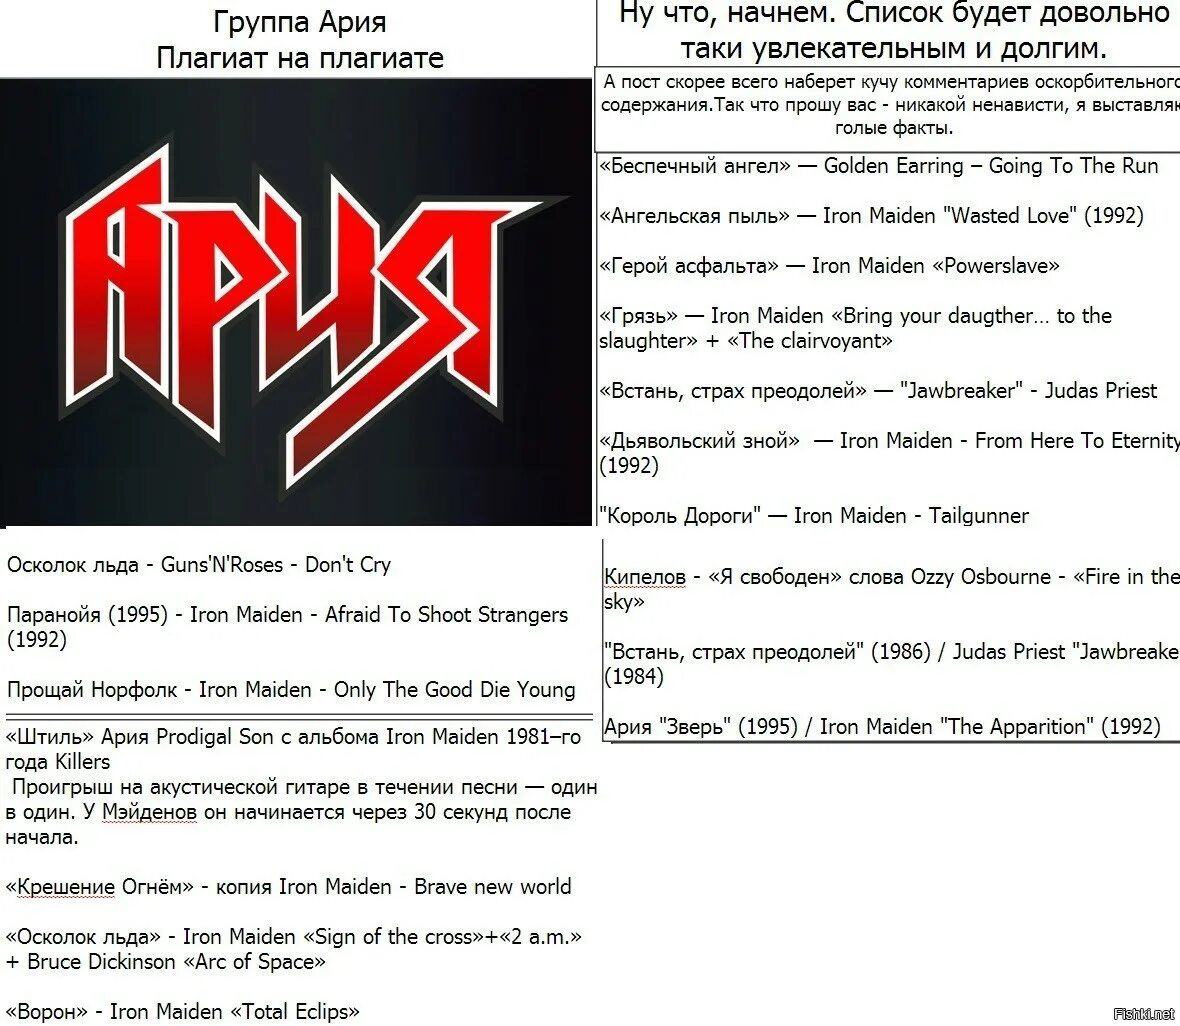 Ария со словами. Группа Ария 1980. Ария и Iron Maiden. Ария плагиат Iron Maiden. Значок группы Ария.